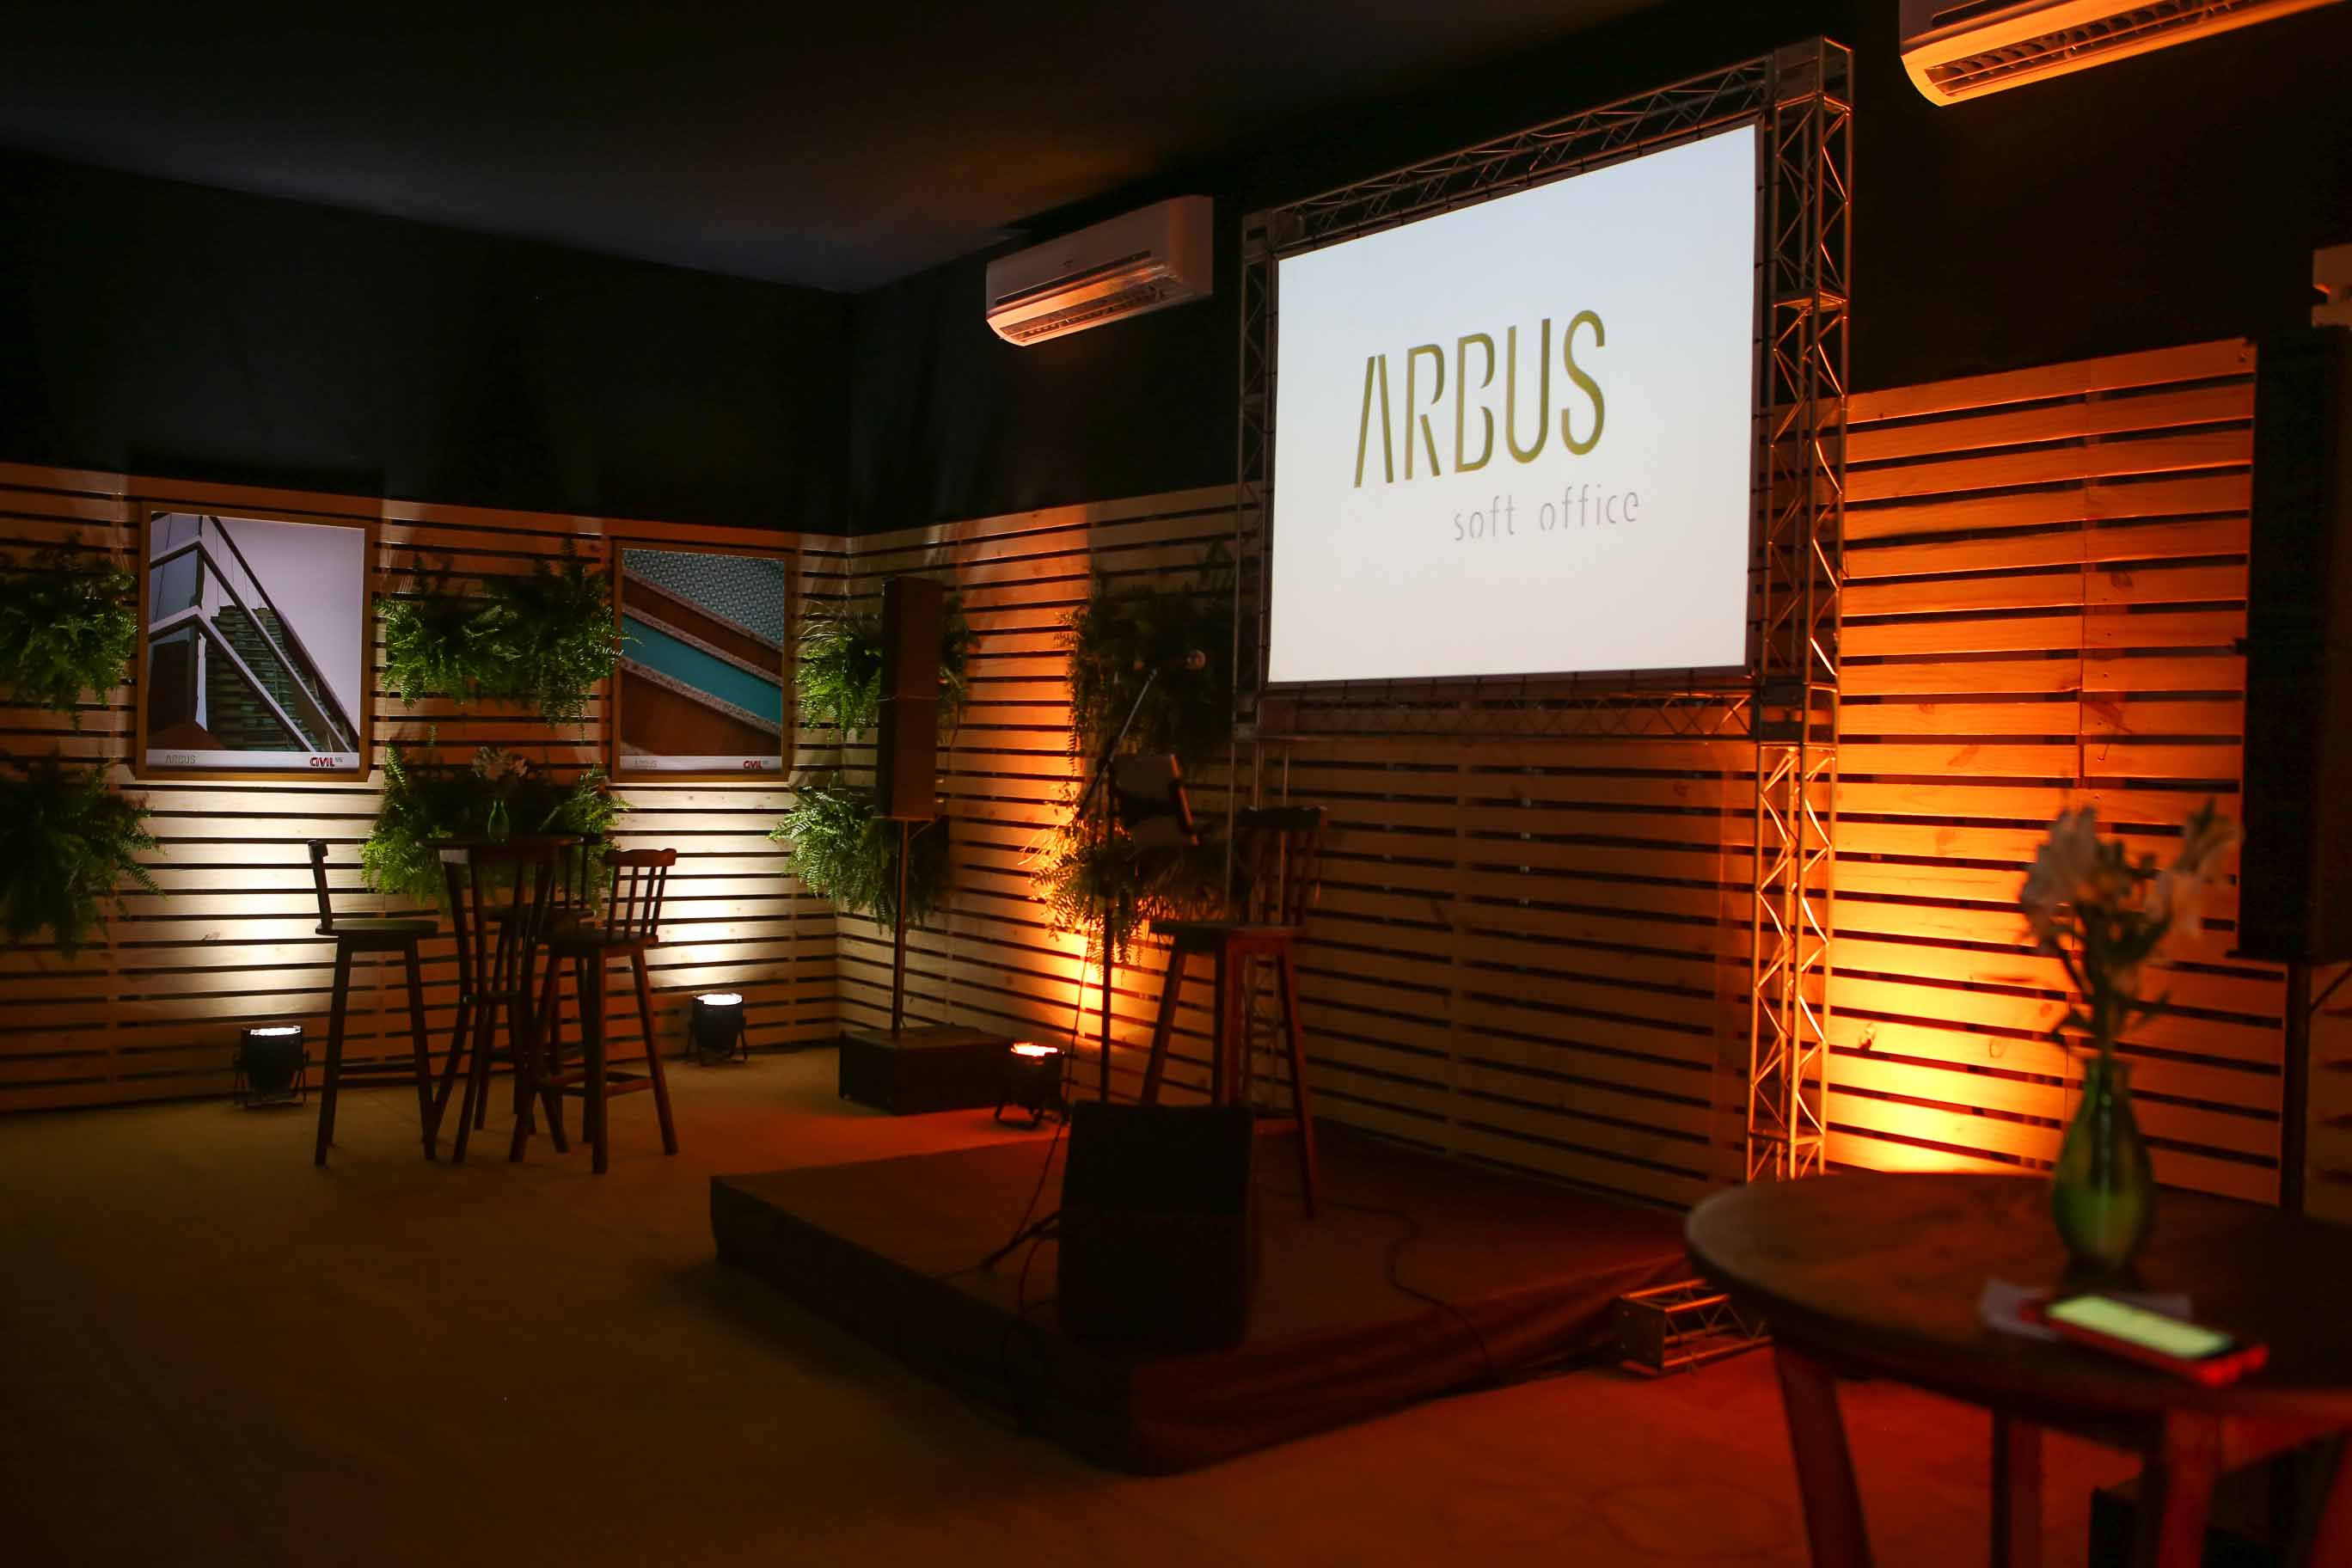  Arbus Soft Office                  